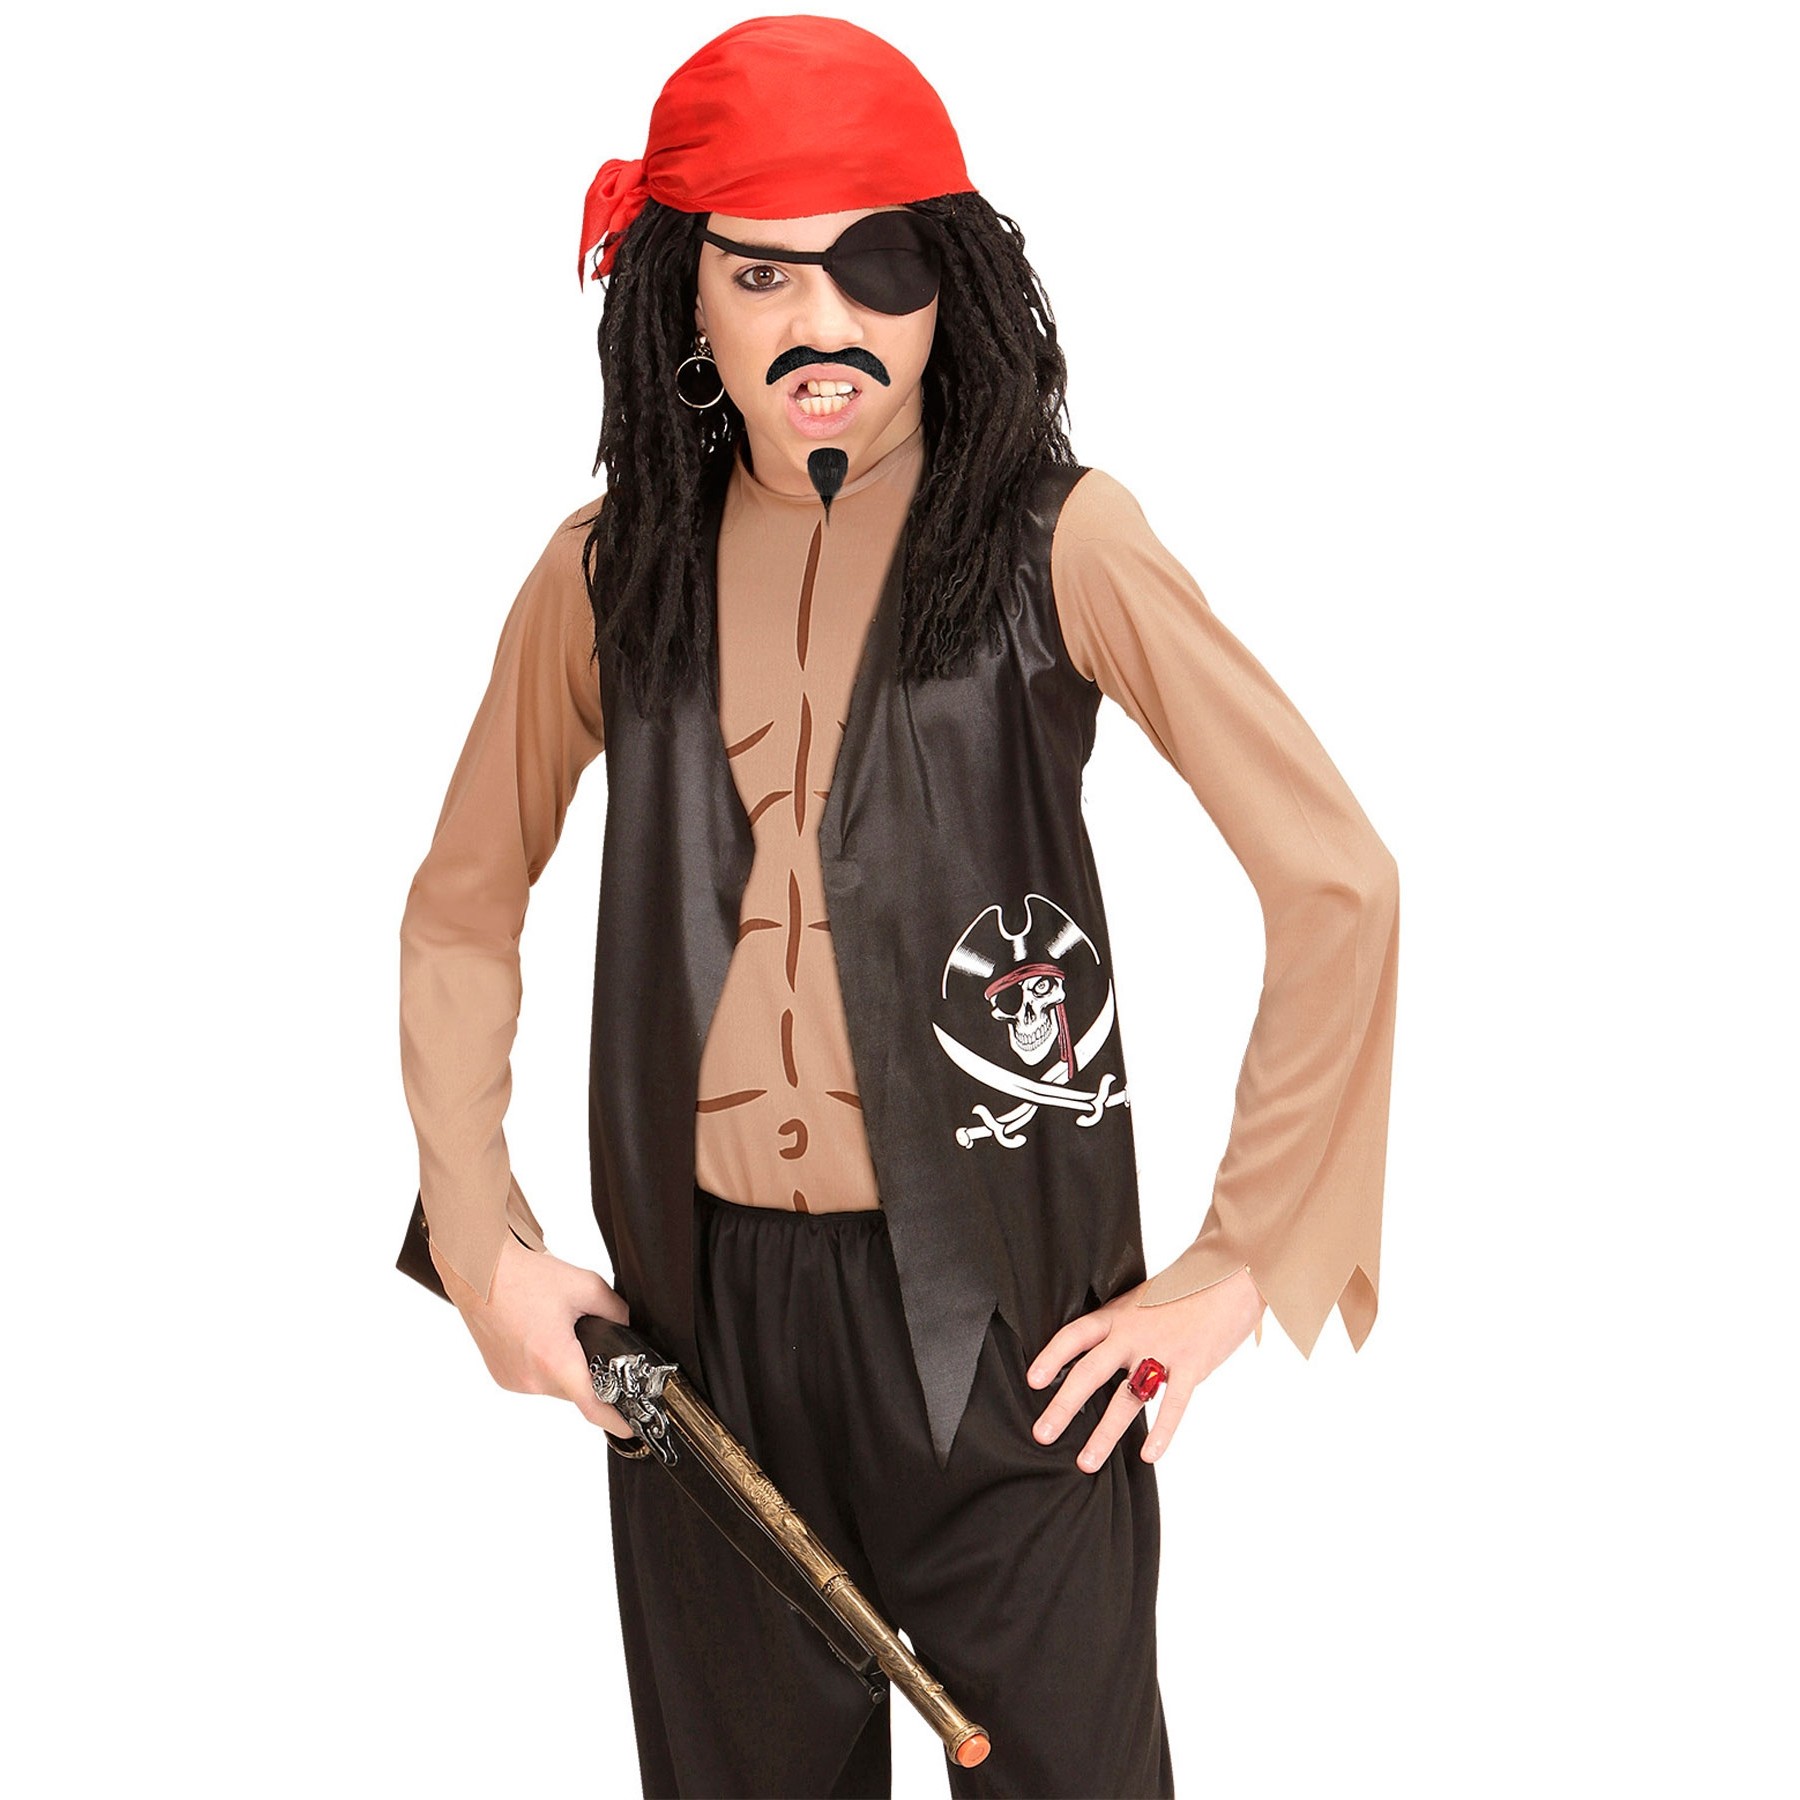 Pepe Piraten Kostüm für Herren